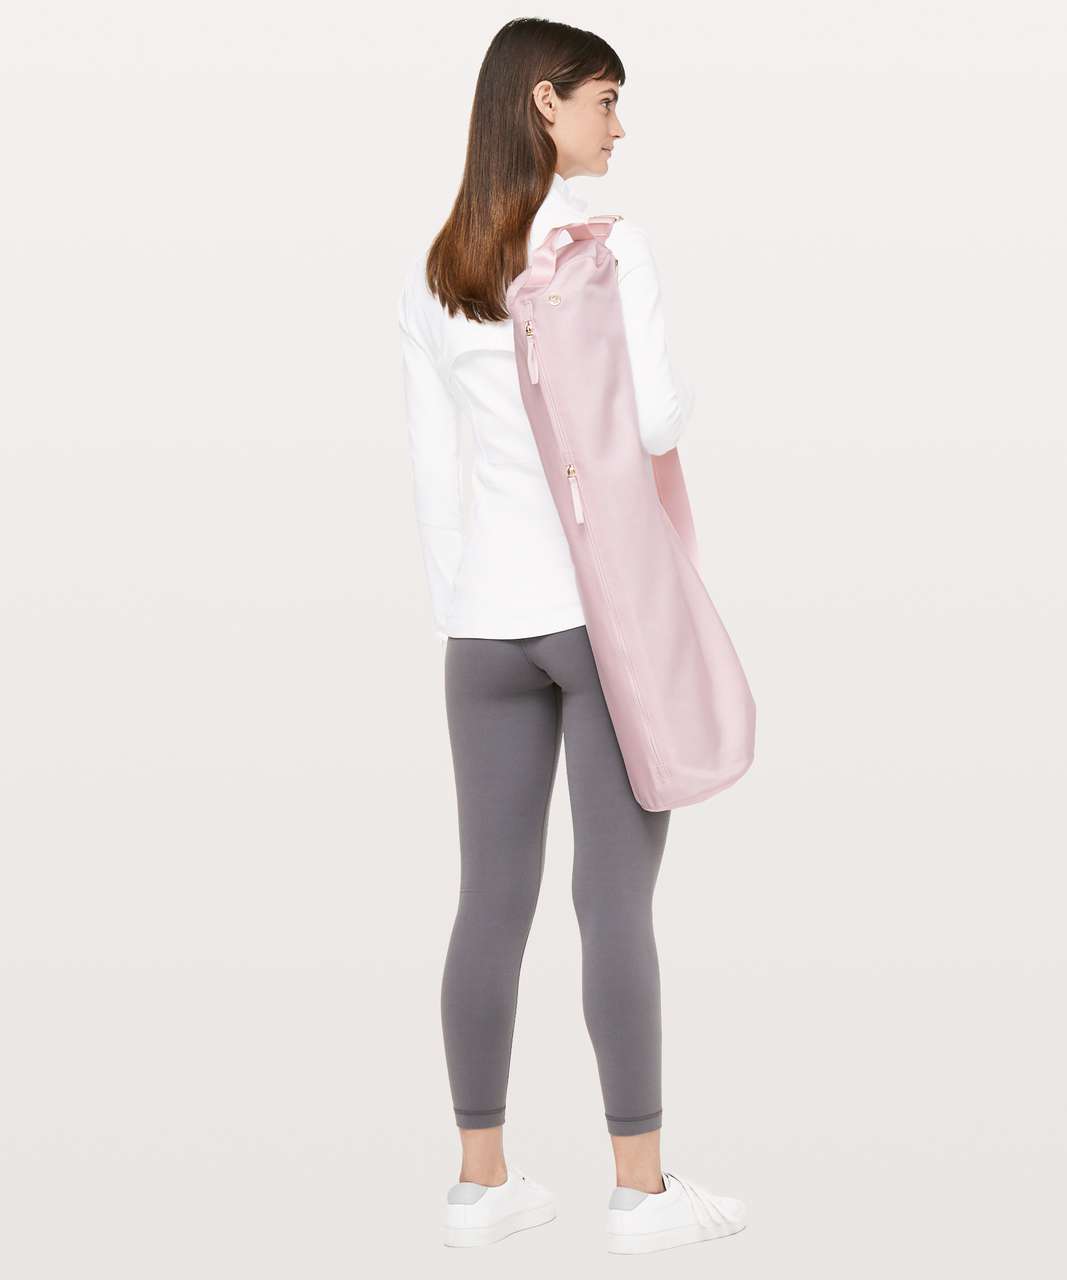 Lululemon Pink Yoga Mat and Bag 70x26